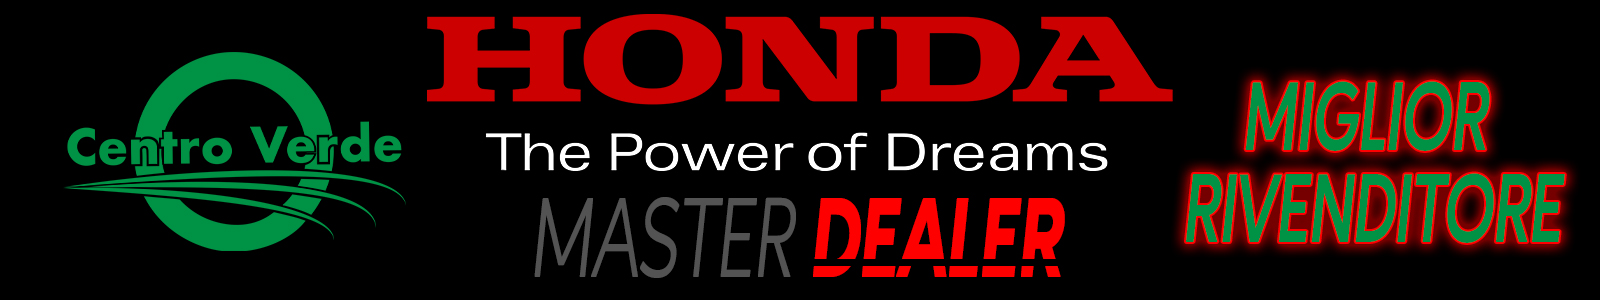 Banner master dealer honda